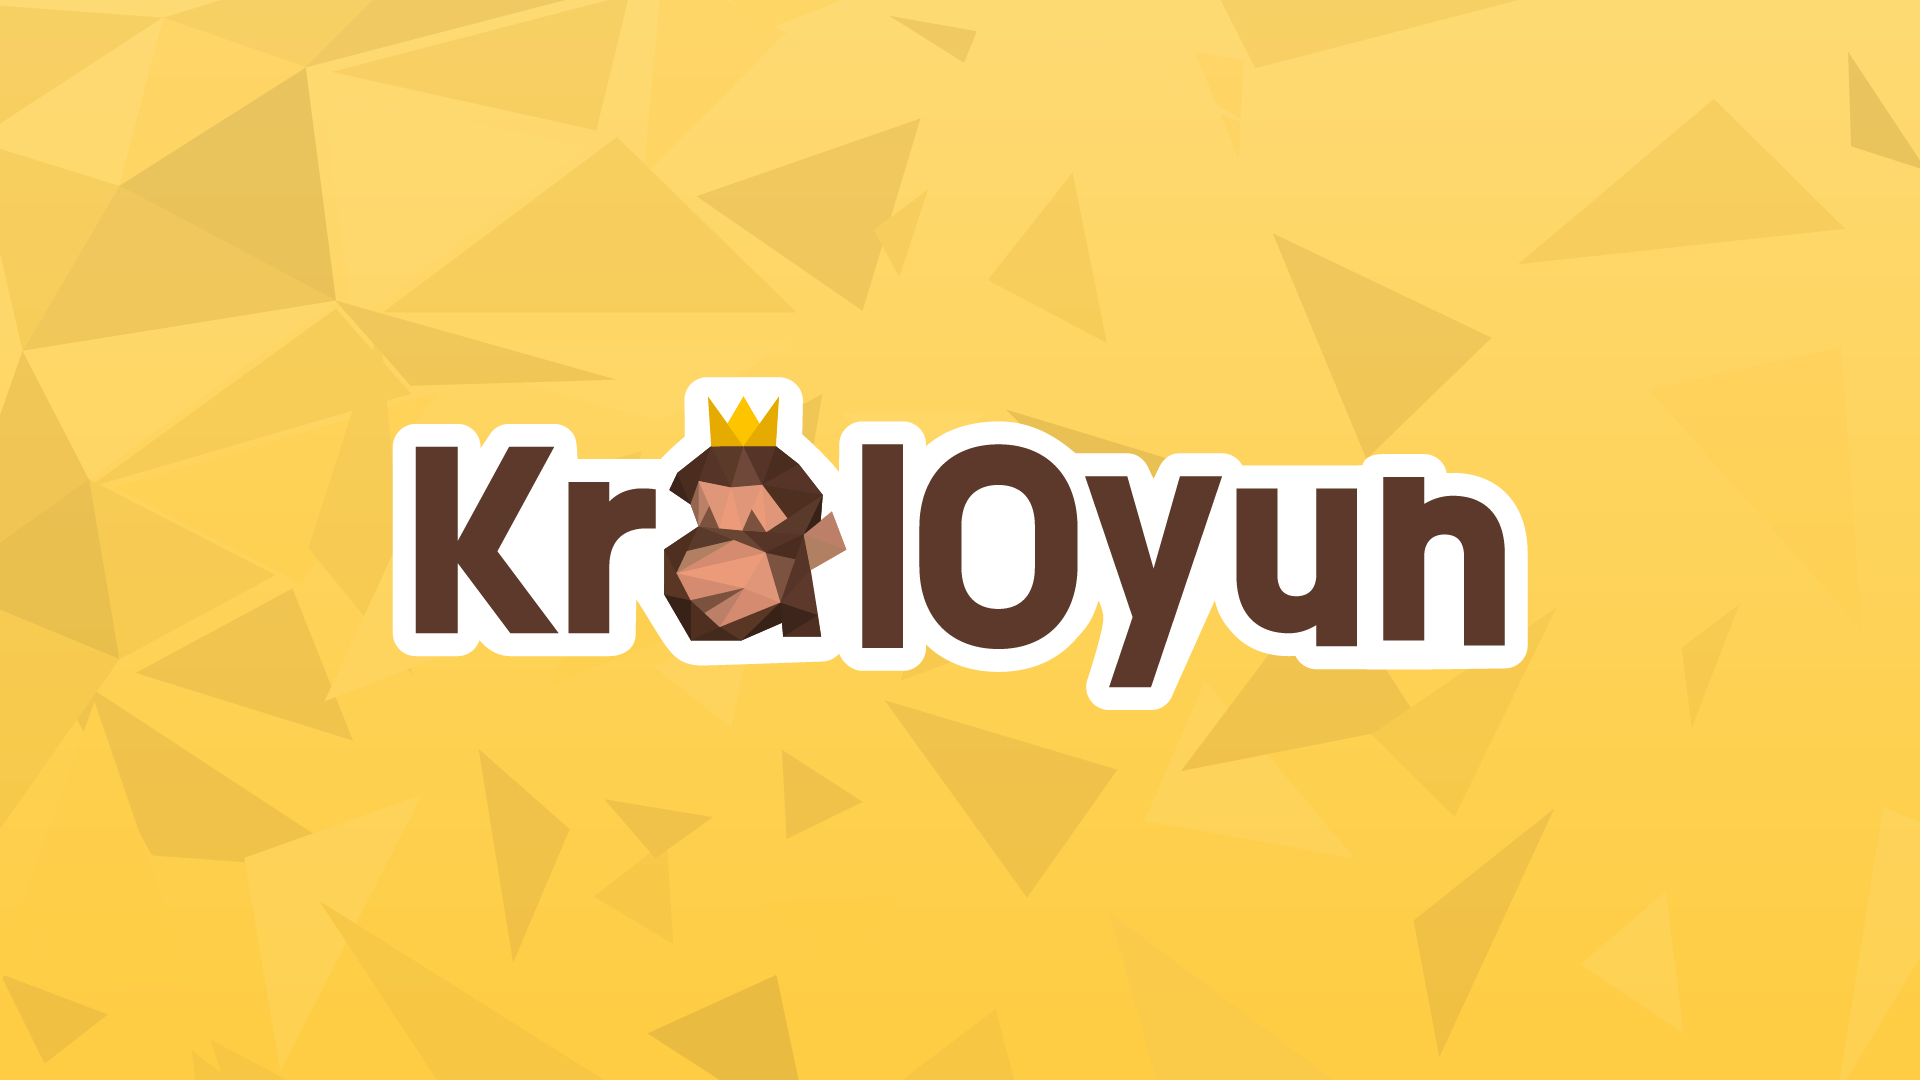 www.kraloyun.com